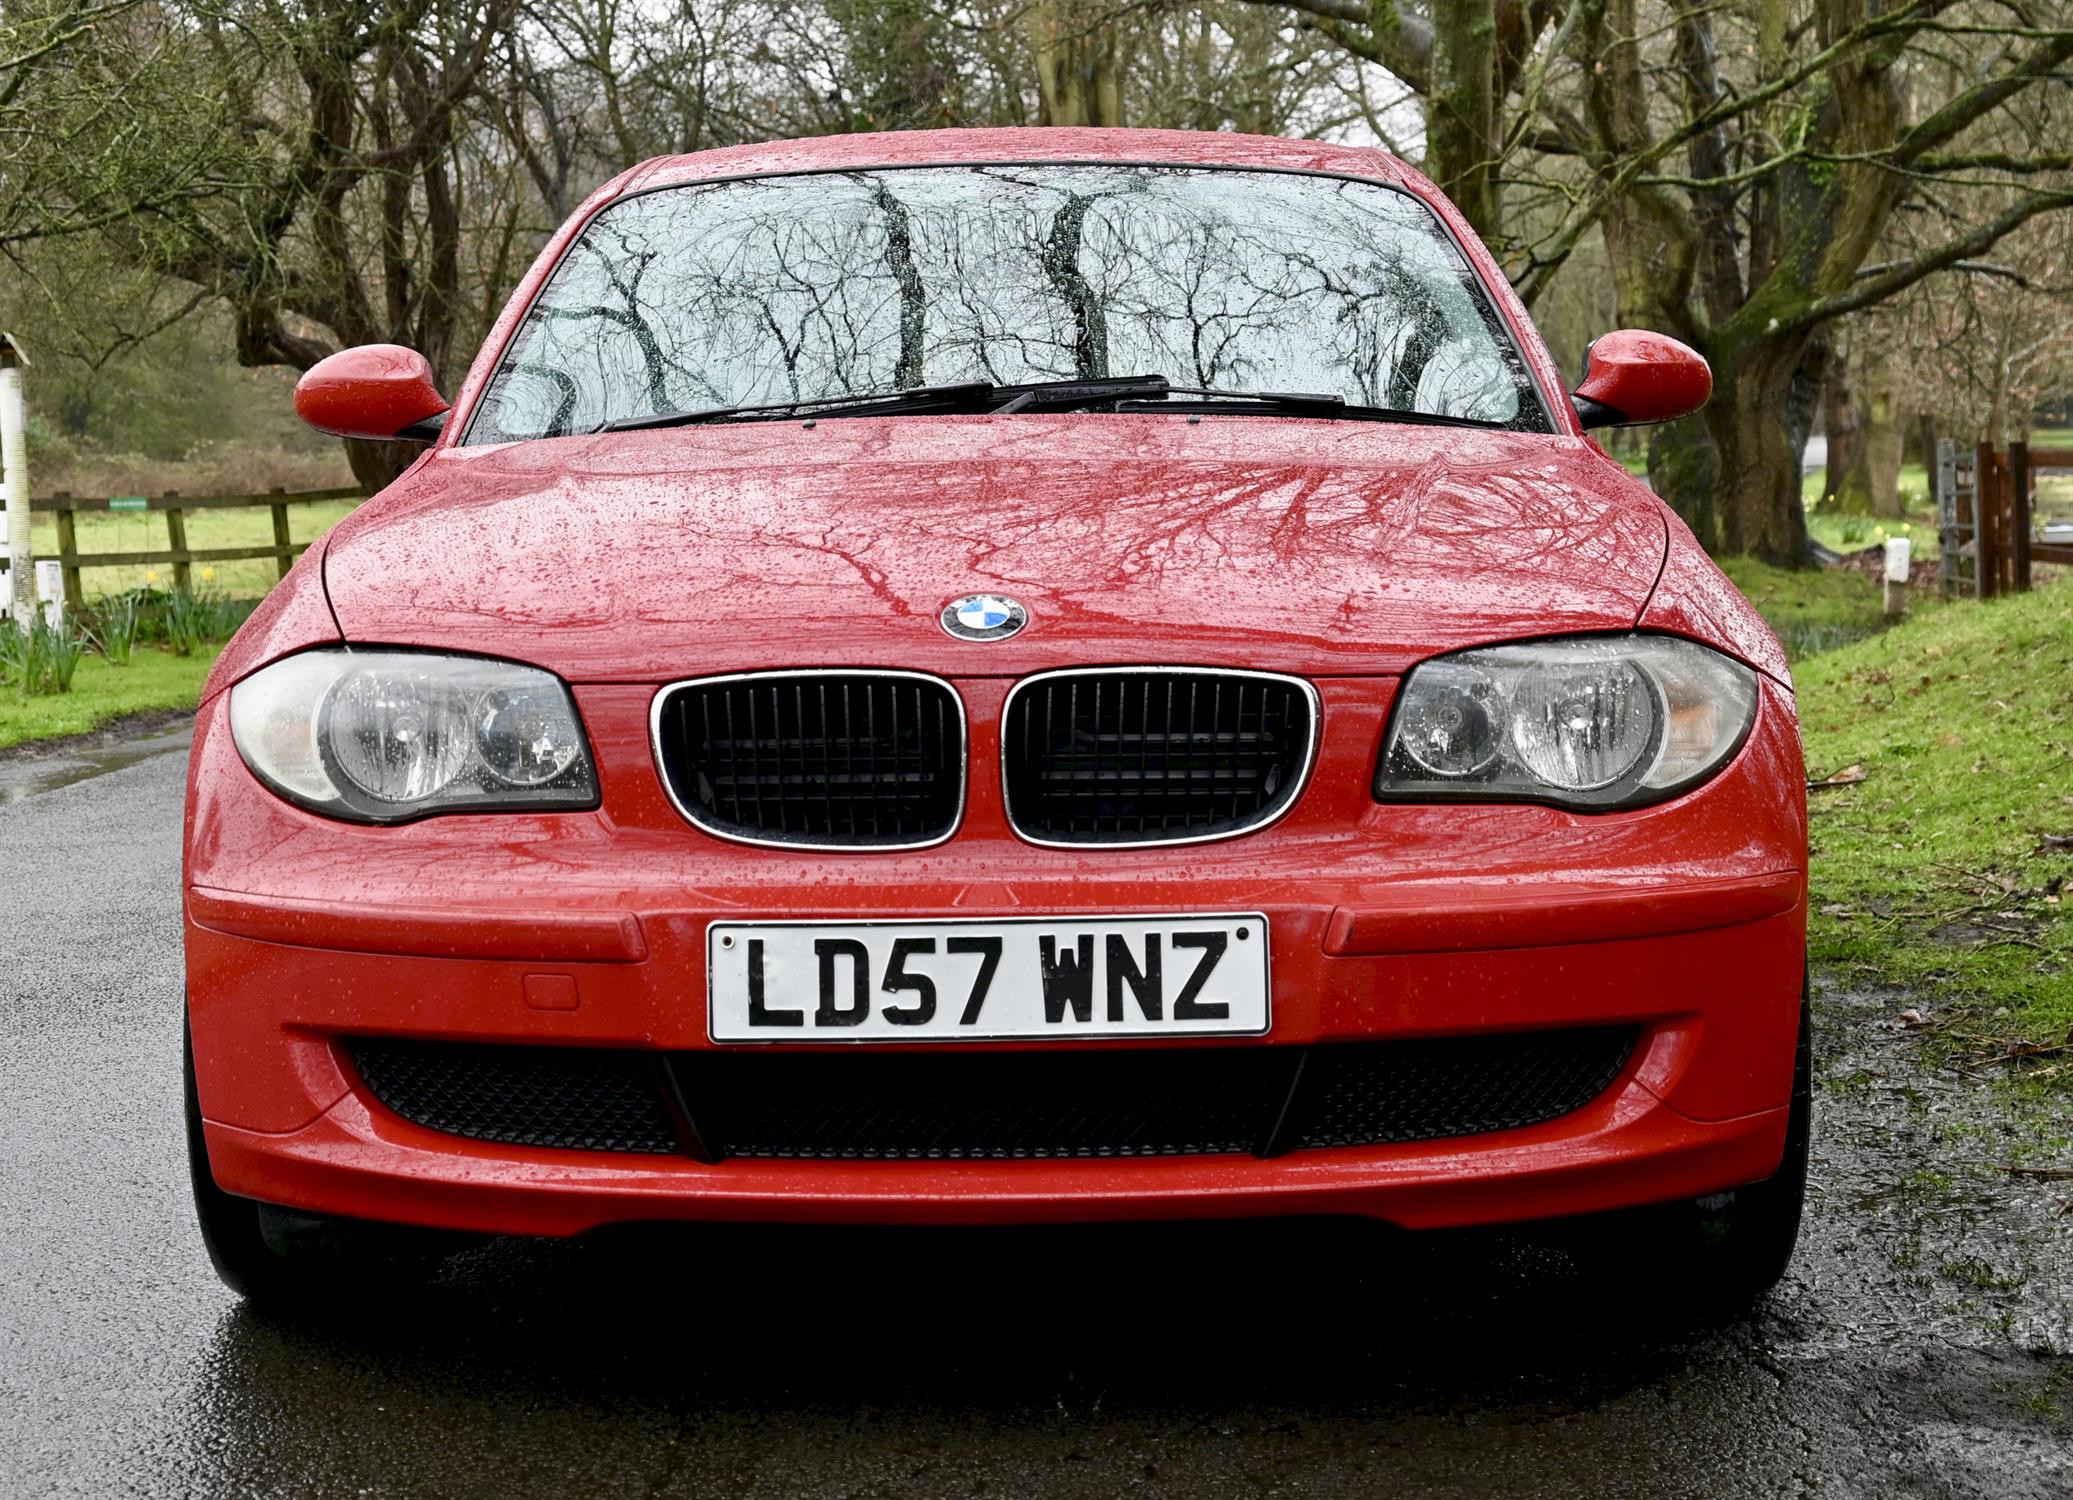 2007 BMW 116i 1597cc Petrol 5 Door Hatchback. Registration number: LD57 WNZ. Mileage: 142,600. - Image 5 of 12